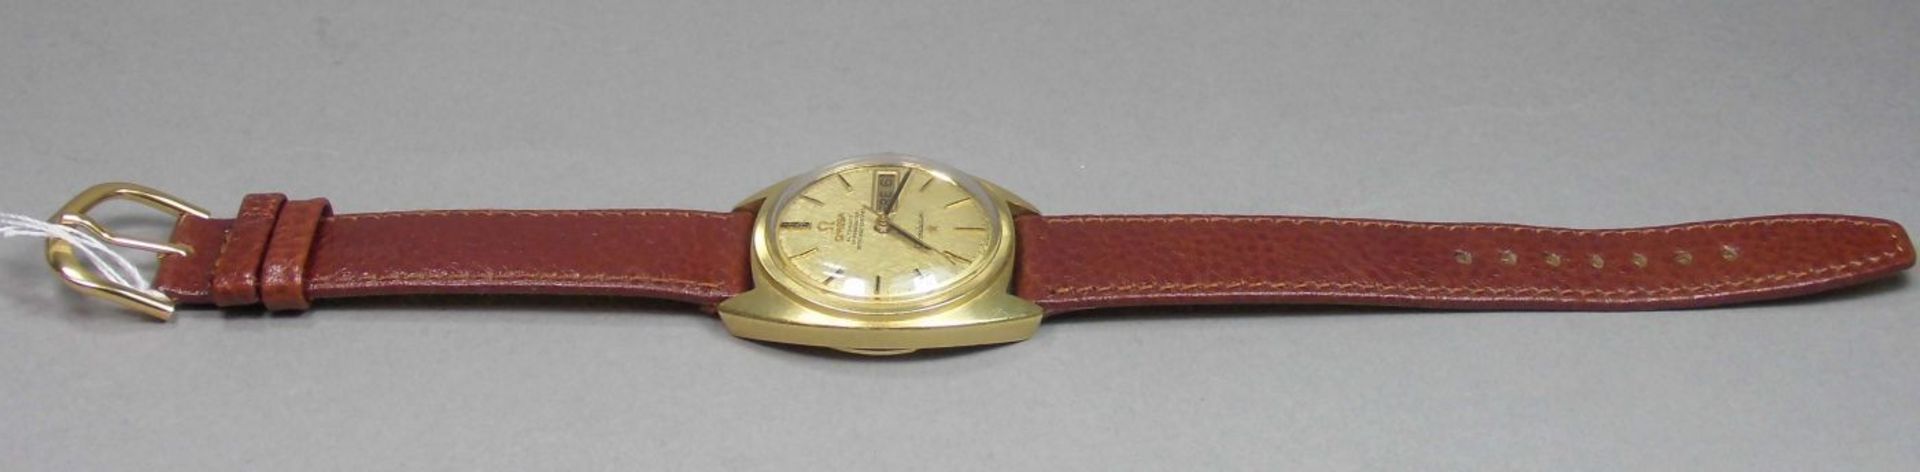 VINTAGE ARMBANDUHR: OMEGA CONSTELLATION / wristwatch, Herstellungsjahr 1968, Automatik-Uhr, - Bild 4 aus 11